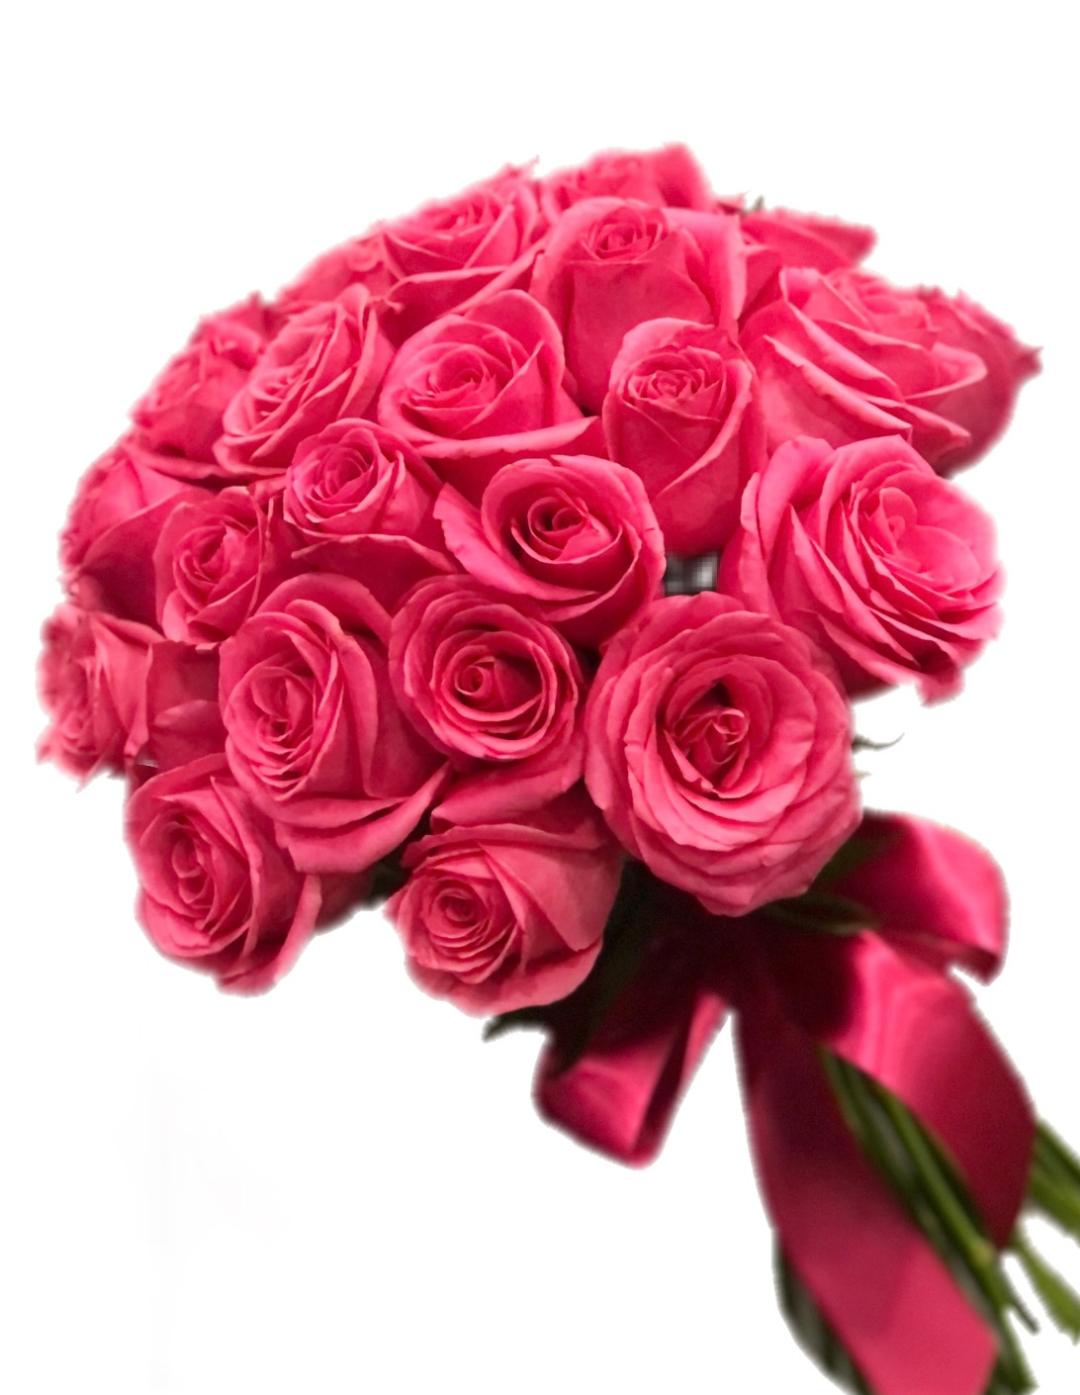 Buquê Elegance Com 36 Rosas Em Tons De Rosa